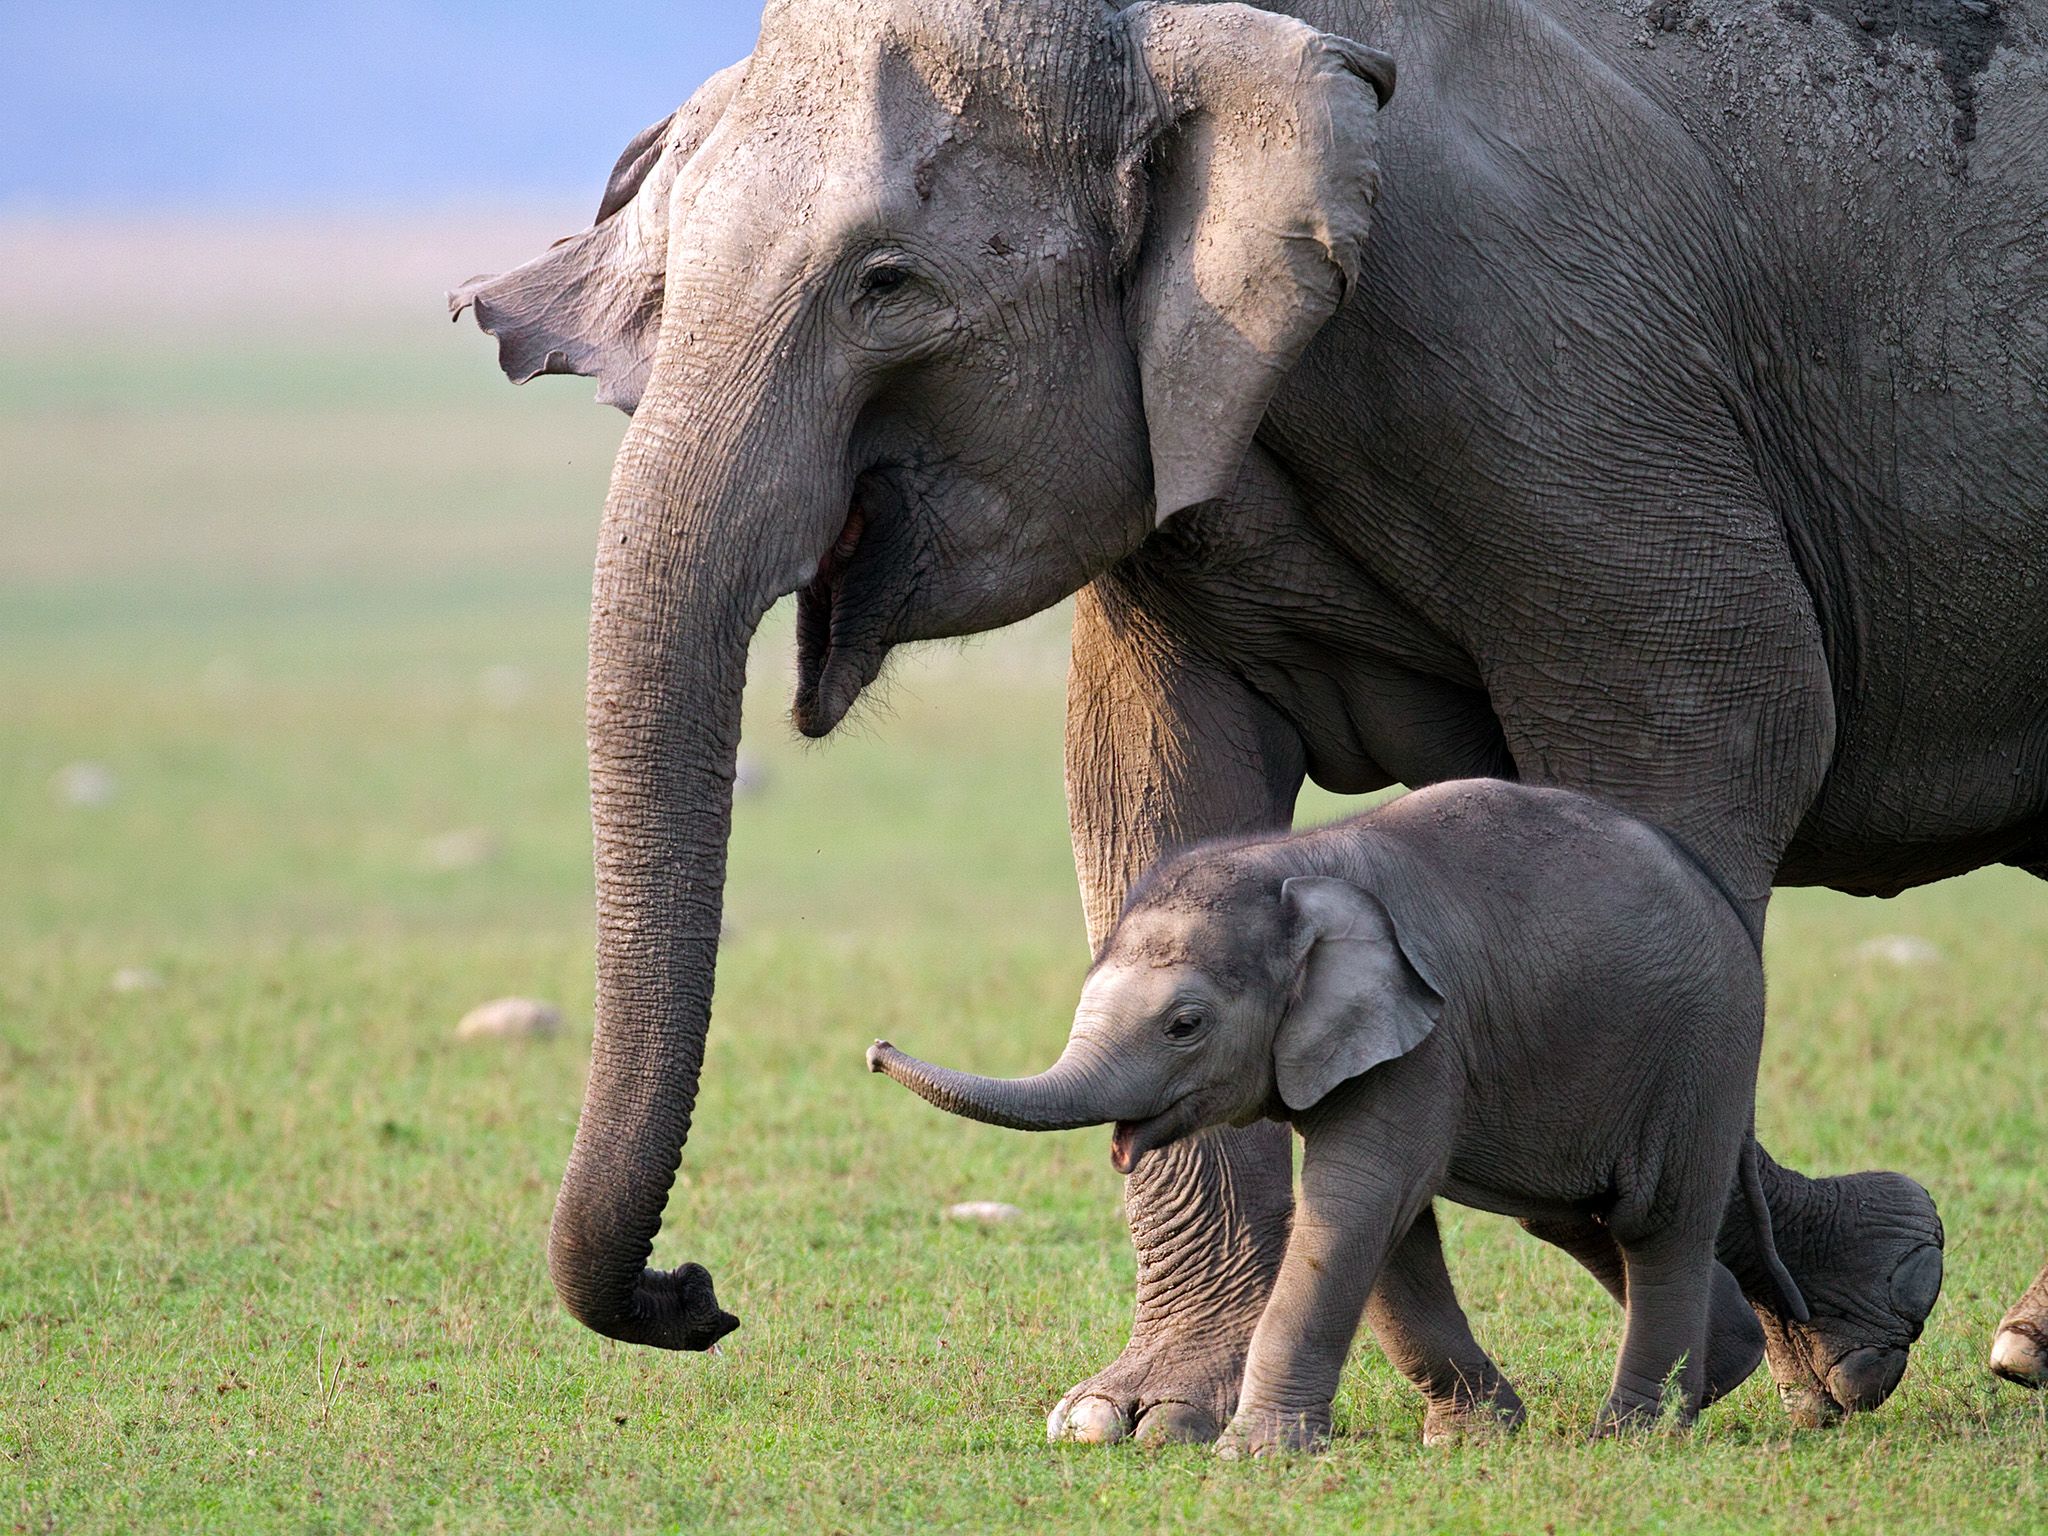 تتميز الفيلة بنظم تَواصل معقدة وقد تتسبب في إنقاذ... [Photo of the day - مايو 2015]